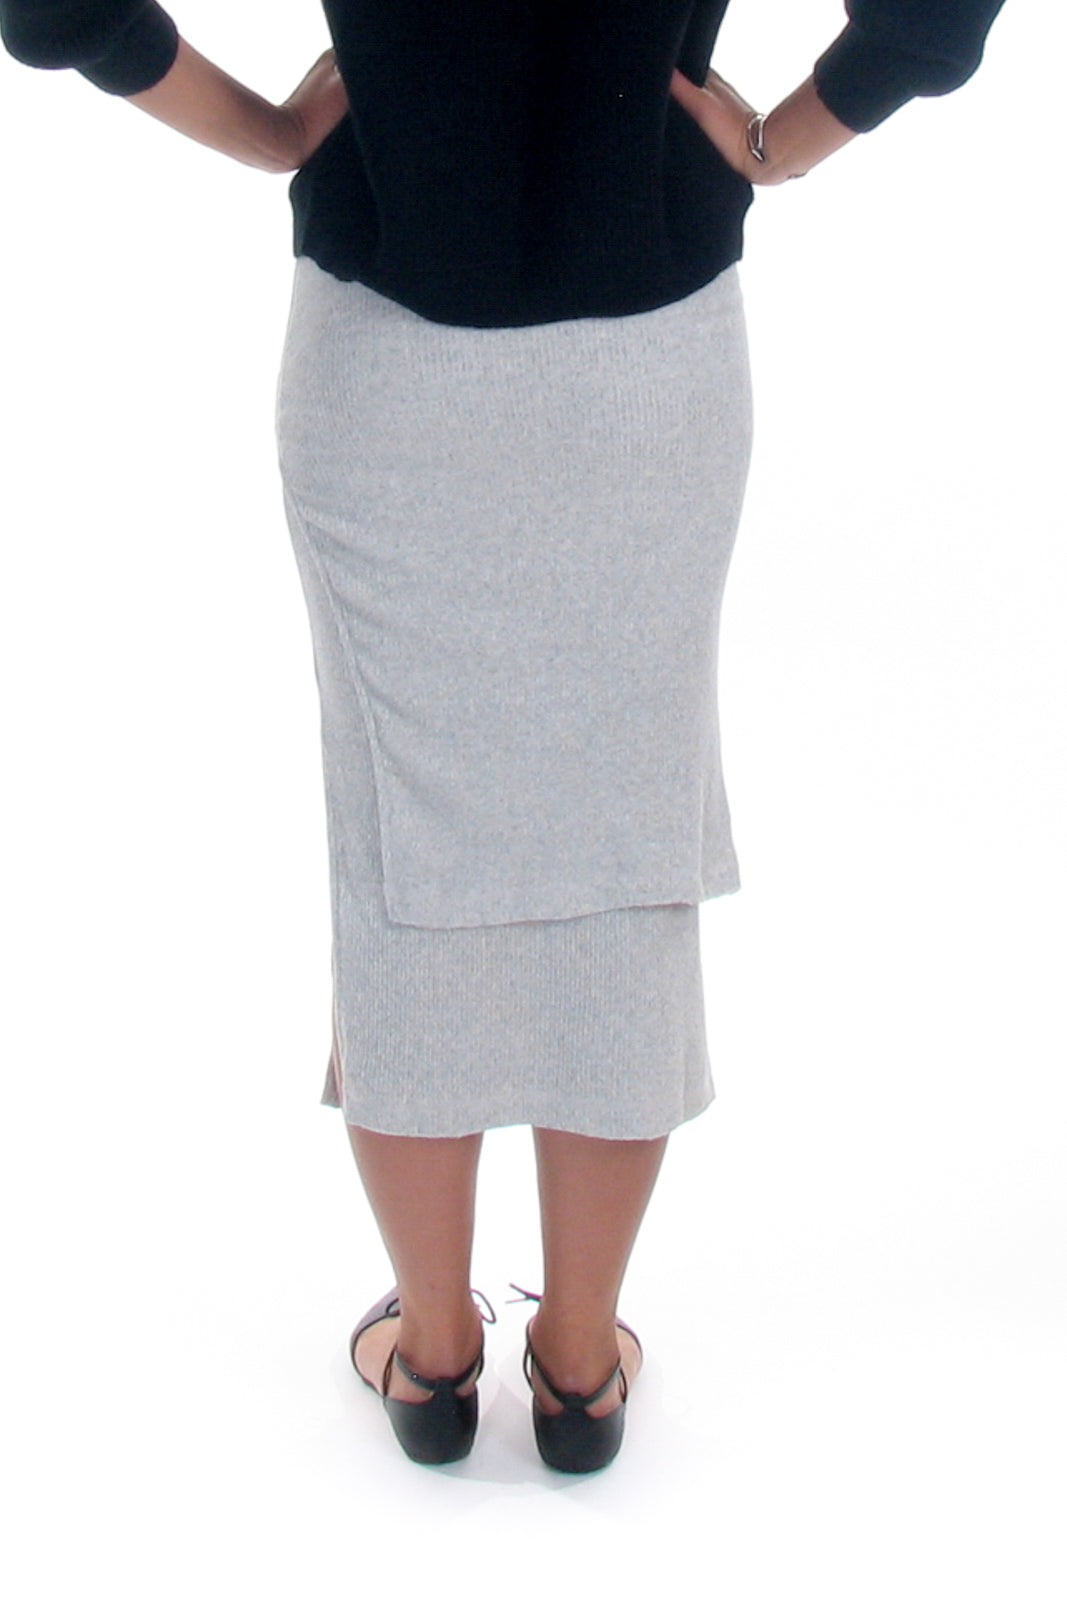 Keller Layer Skirt